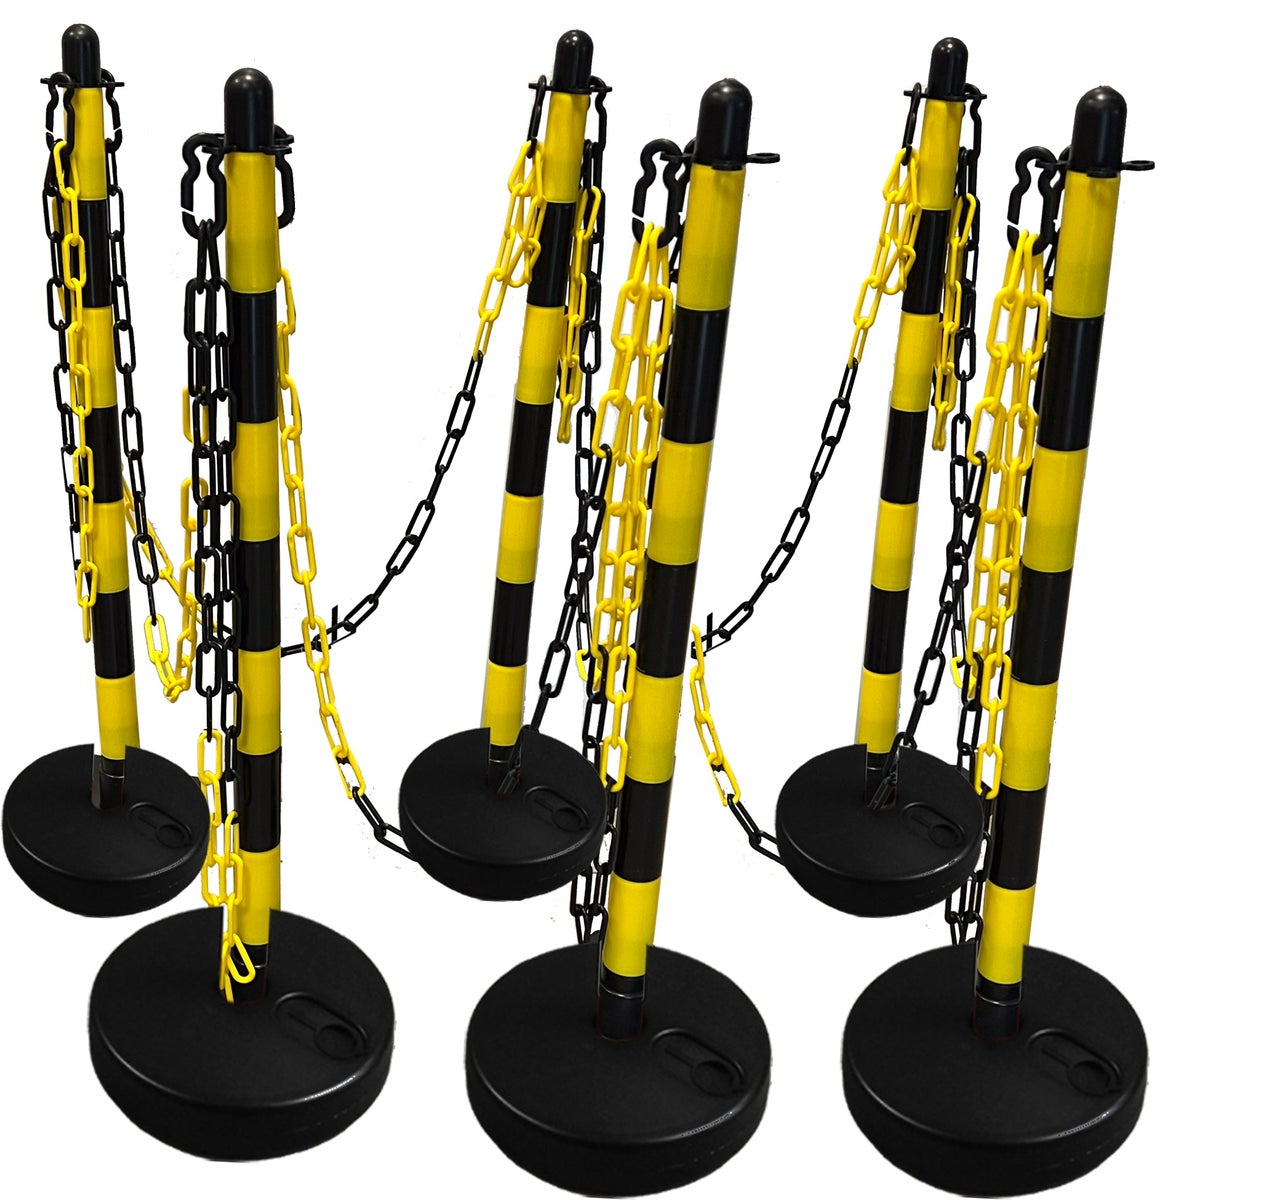 UvV GIALLI Lager Kettenpfosten Set + 6mm Kunststoffkette gelb/schwarz / 6 Pfosten + 12.5 m Kette / Befüllbar (rund)